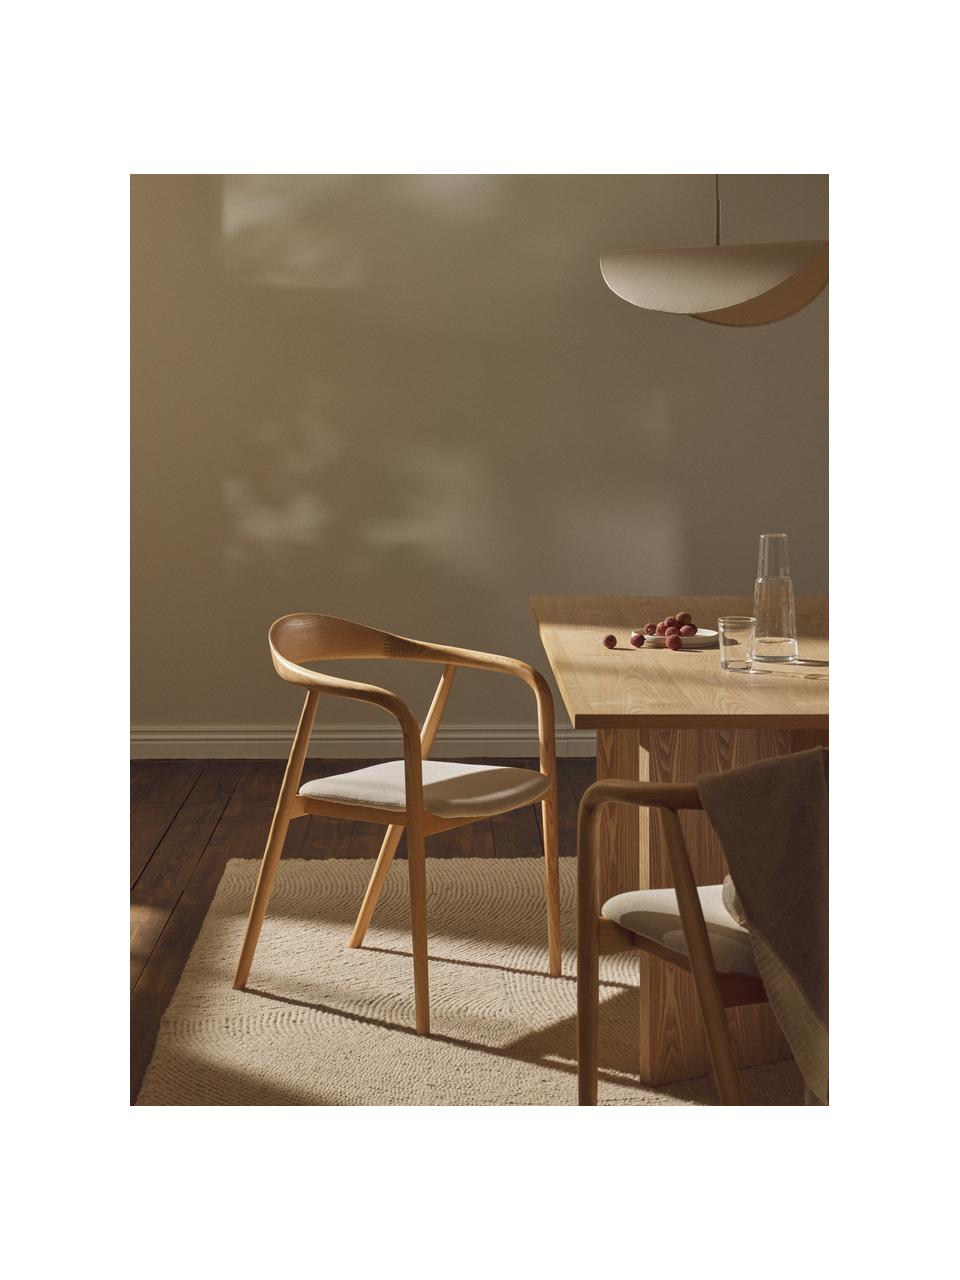 Drevená stolička s opierkami Angelina, Krémovobiela, svetlé jaseňové drevo, Š 57 x V 80 cm